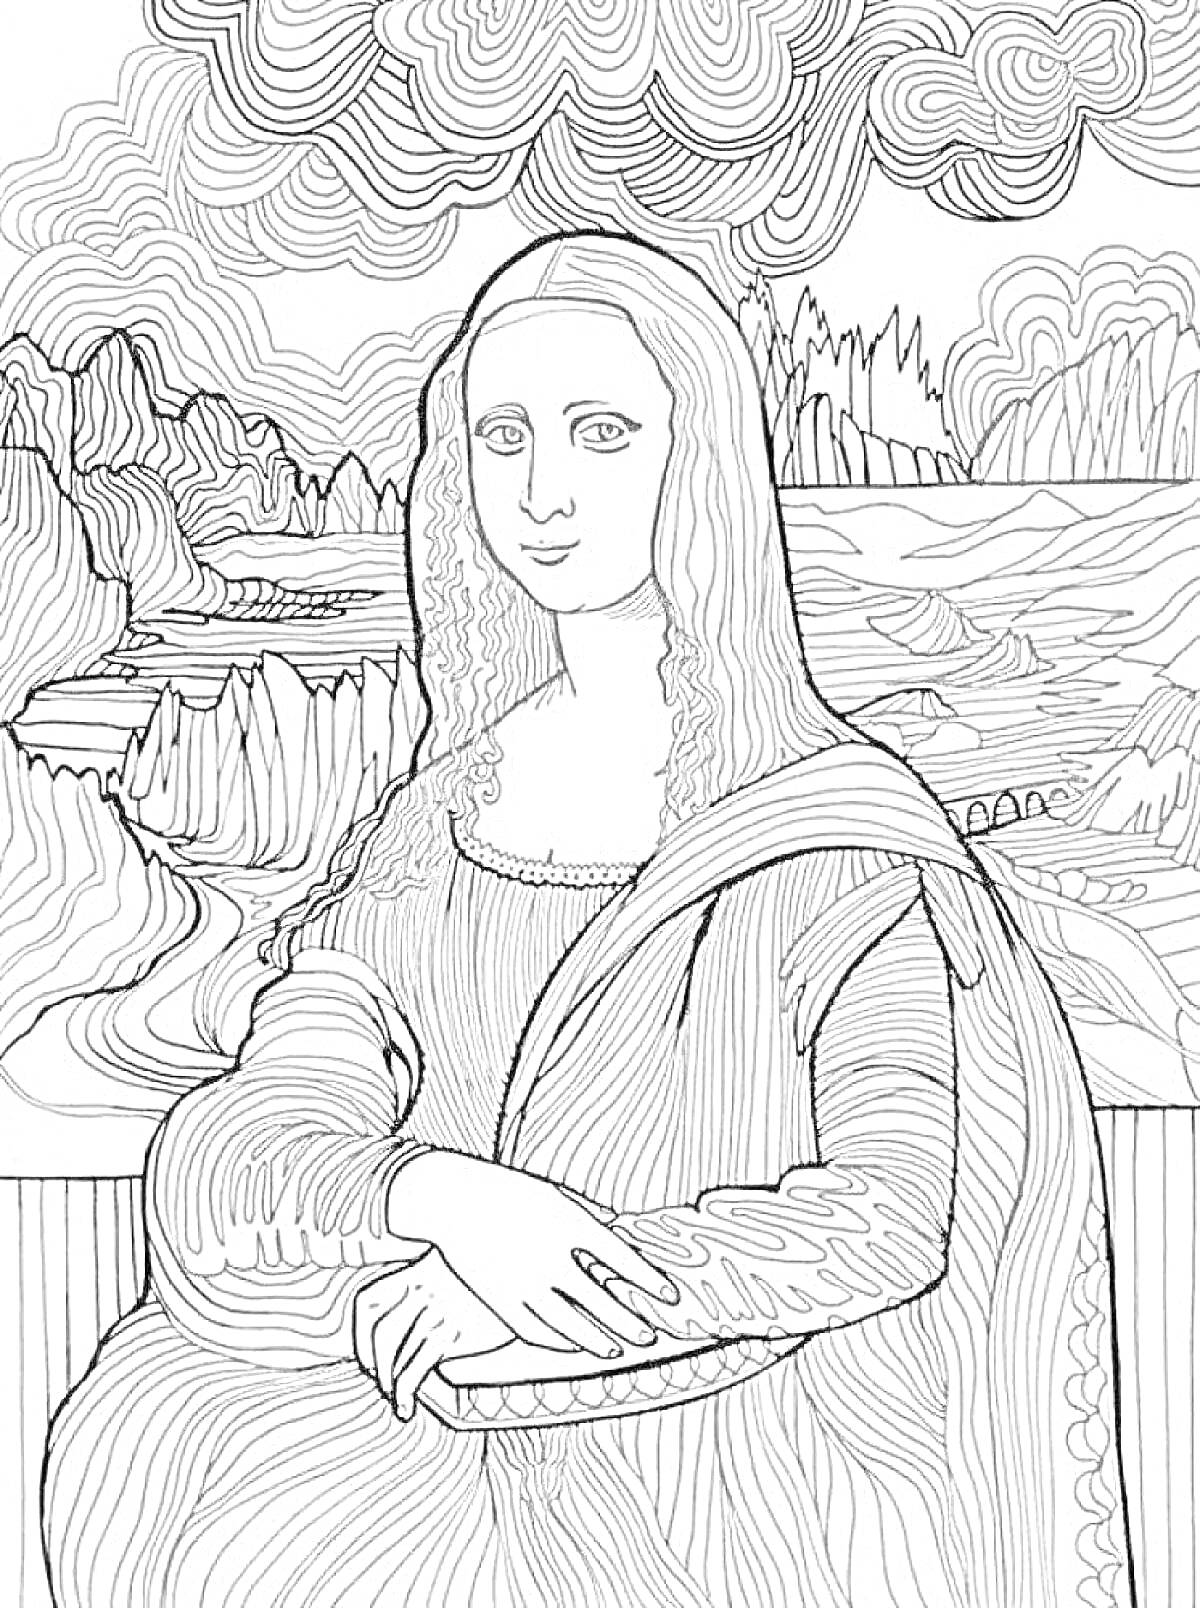 Раскраска Раскраска с портретом Моны Лизы на фоне гор, деревьев и неба с облаками